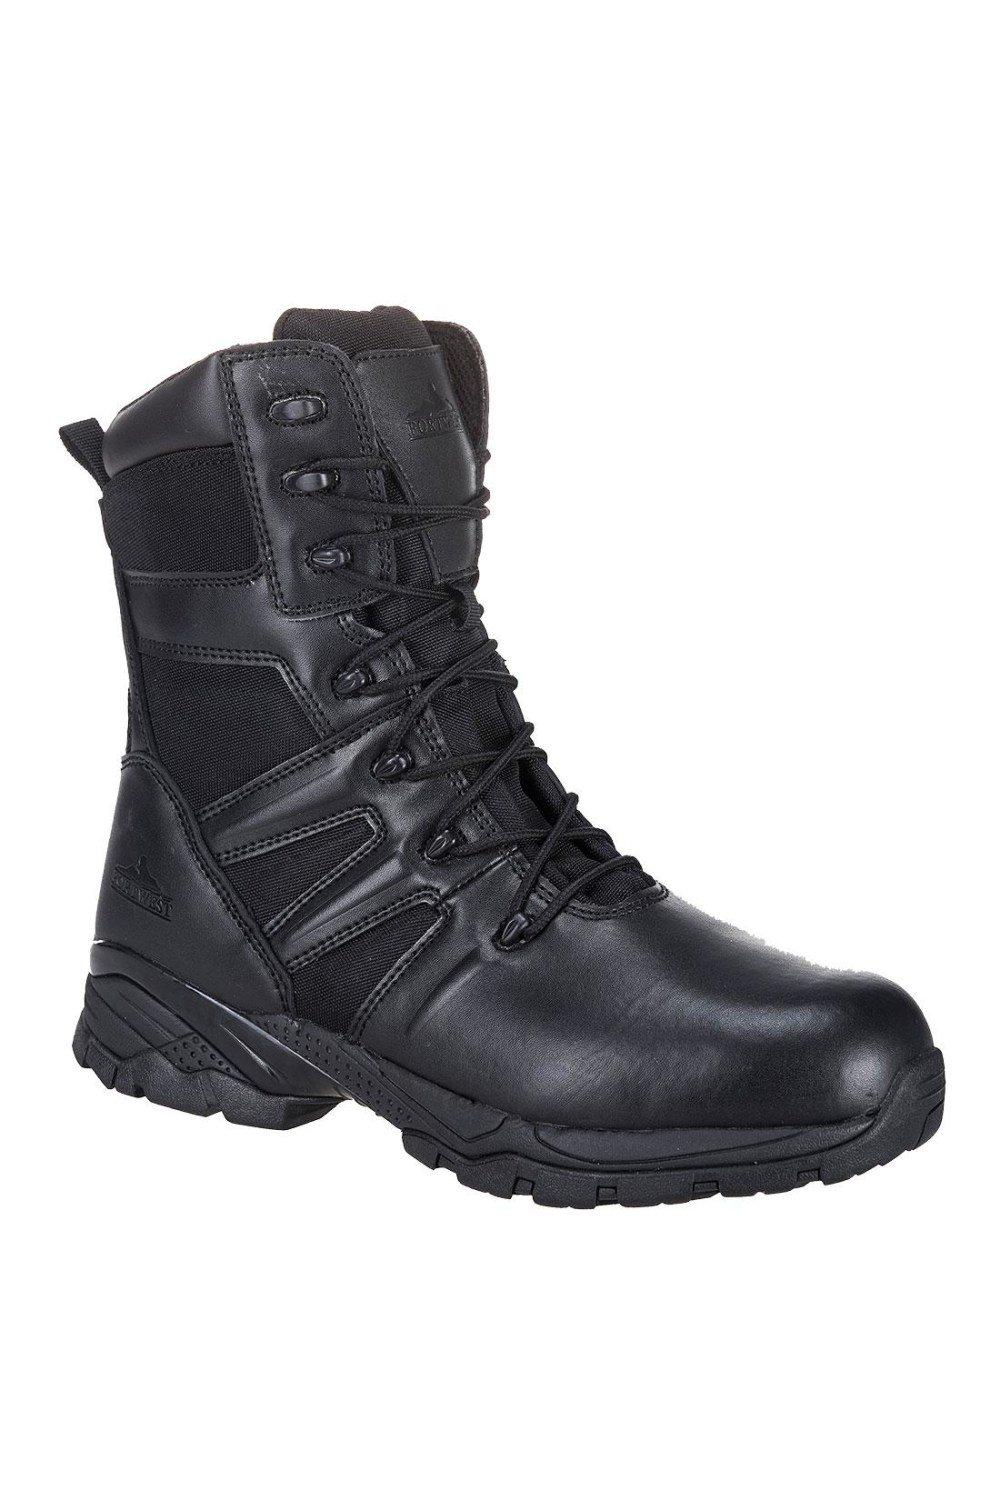 Защитные ботинки Steelite TaskForce Portwest, черный